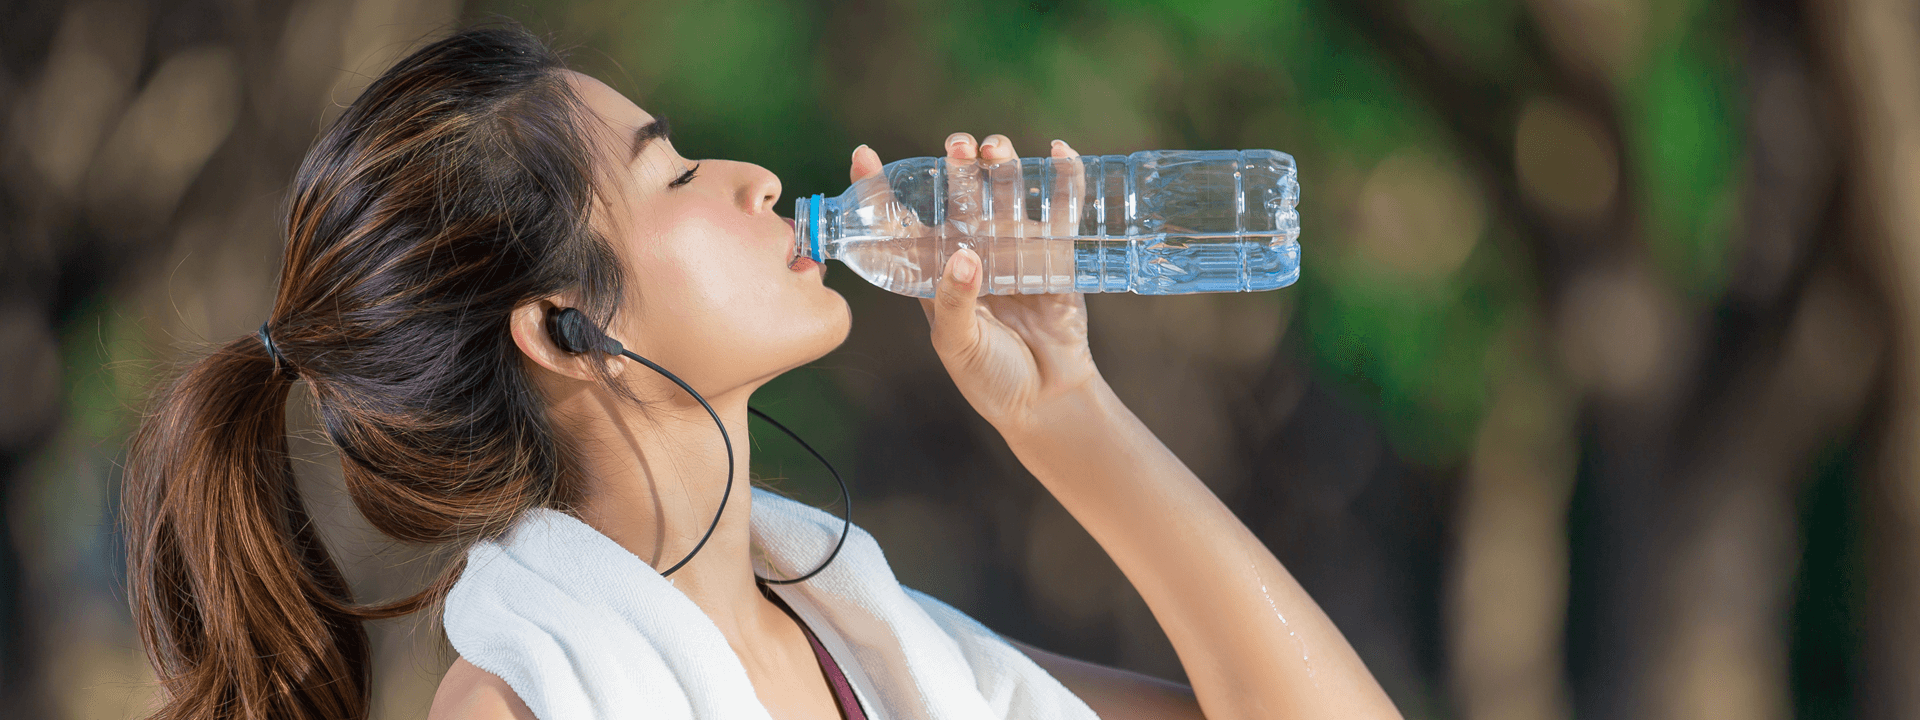 Is It OK To Drink Alkaline Water?